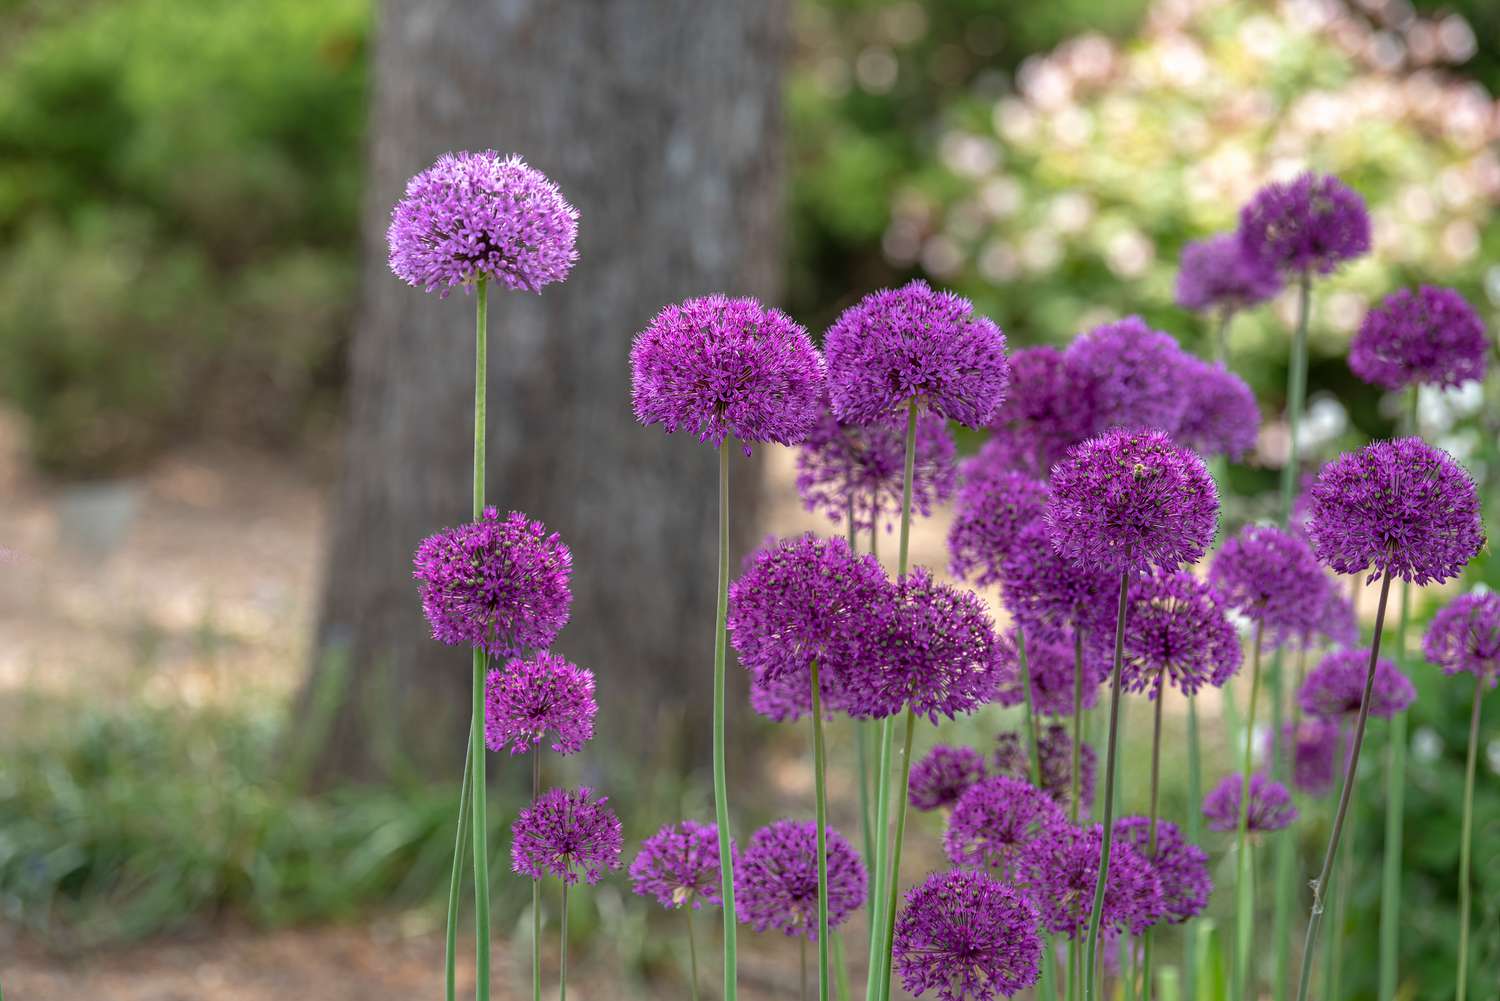 Riesige Zwiebelpflanze mit hohen grünen Stängeln und violettem Puffball mit winzigen Blüten